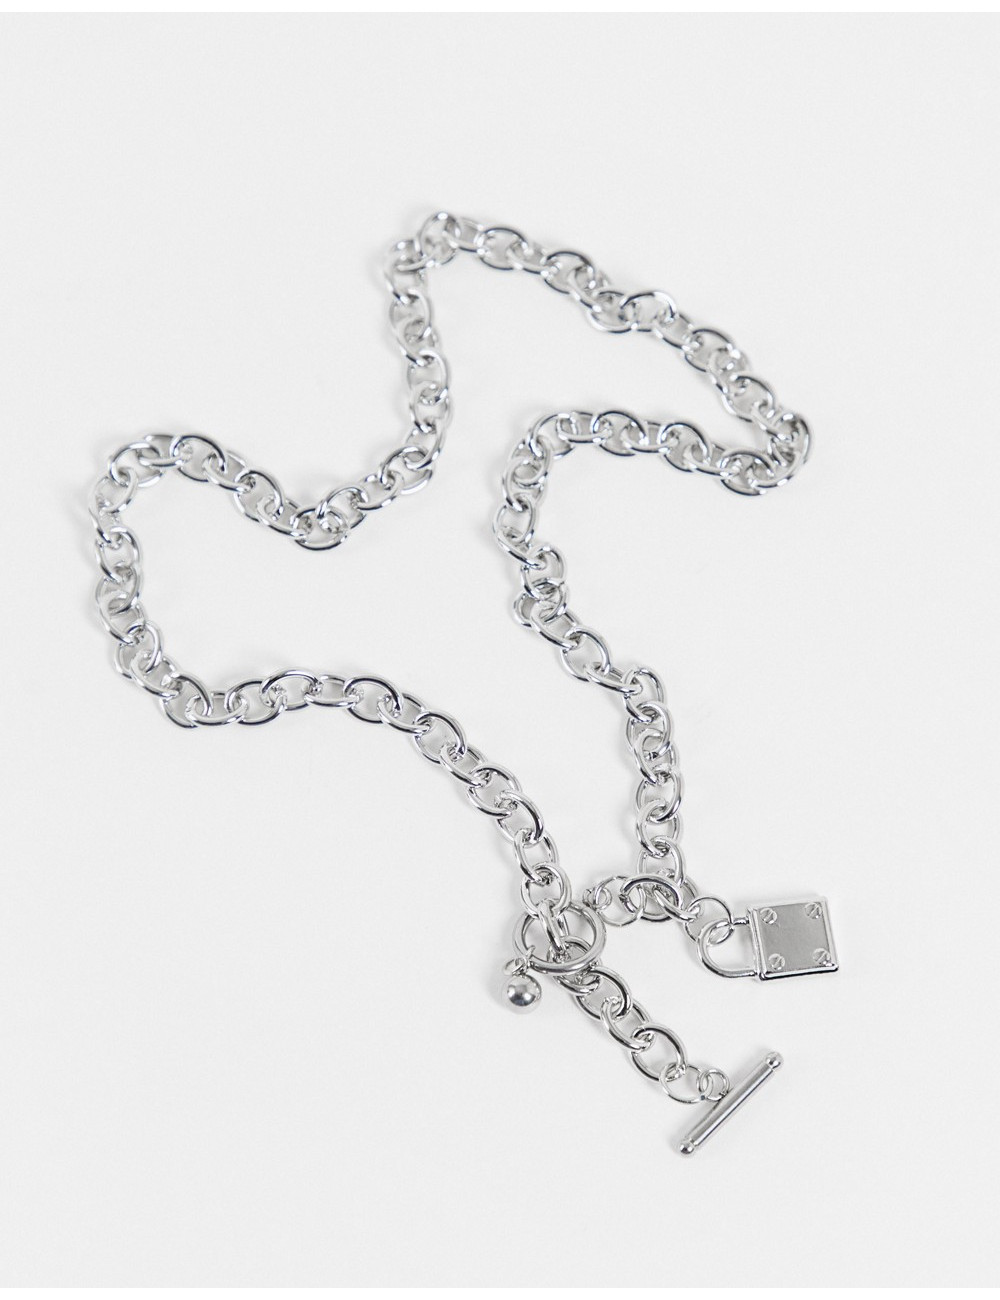 SVNX padlock chain necklace